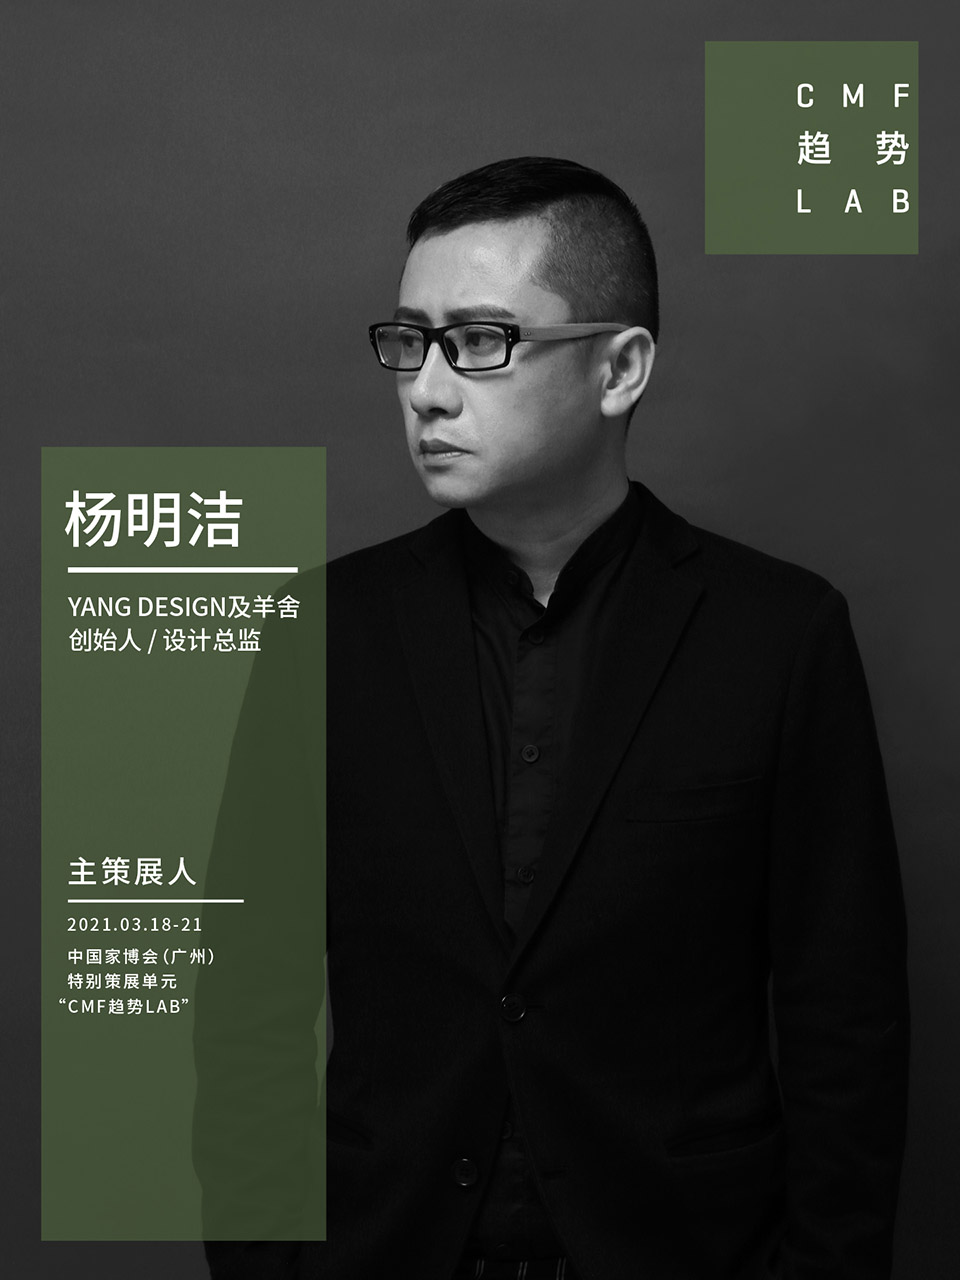 中国家博会“CMF趋势LAB” 四大主题实验室全新发布/“虚拟重构实验室”、“融手艺材料实验室”、“精致懒实验室”、“无废实验室”
-116